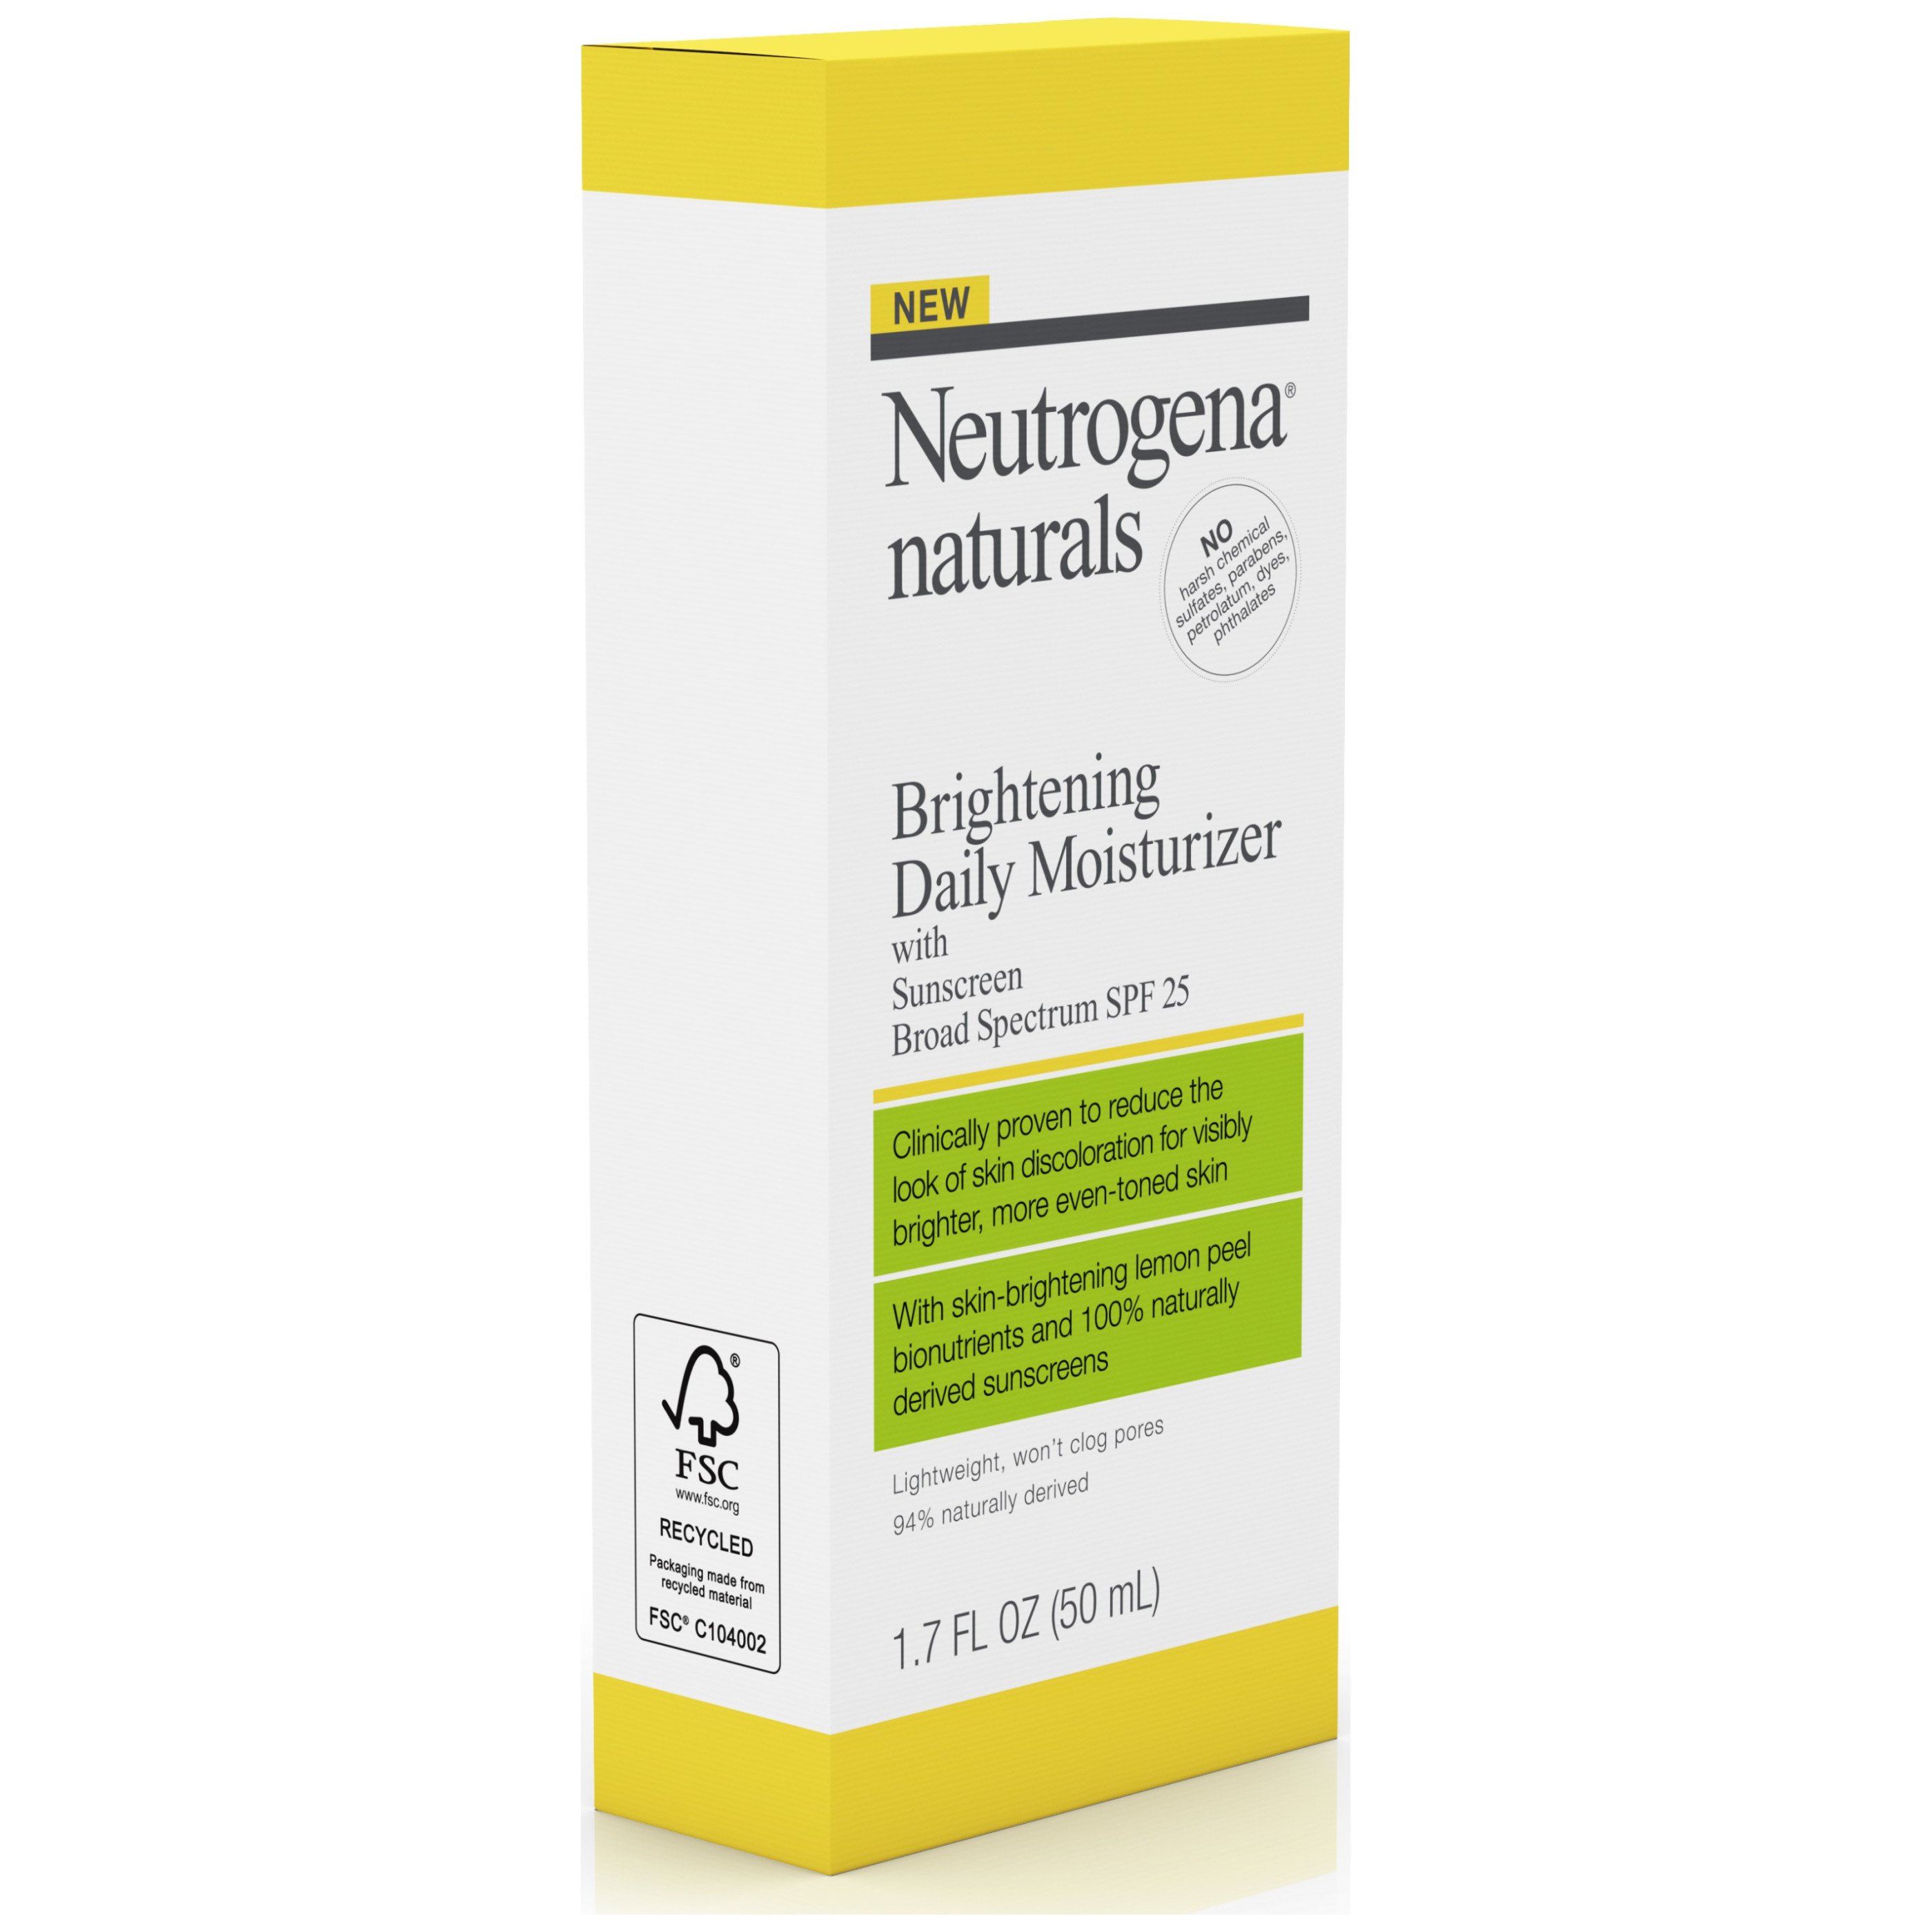 Neutrogena Naturals Brightening Daily Moisturizer With Sunscreen Broad Spectrum SPF 25 - Shop 